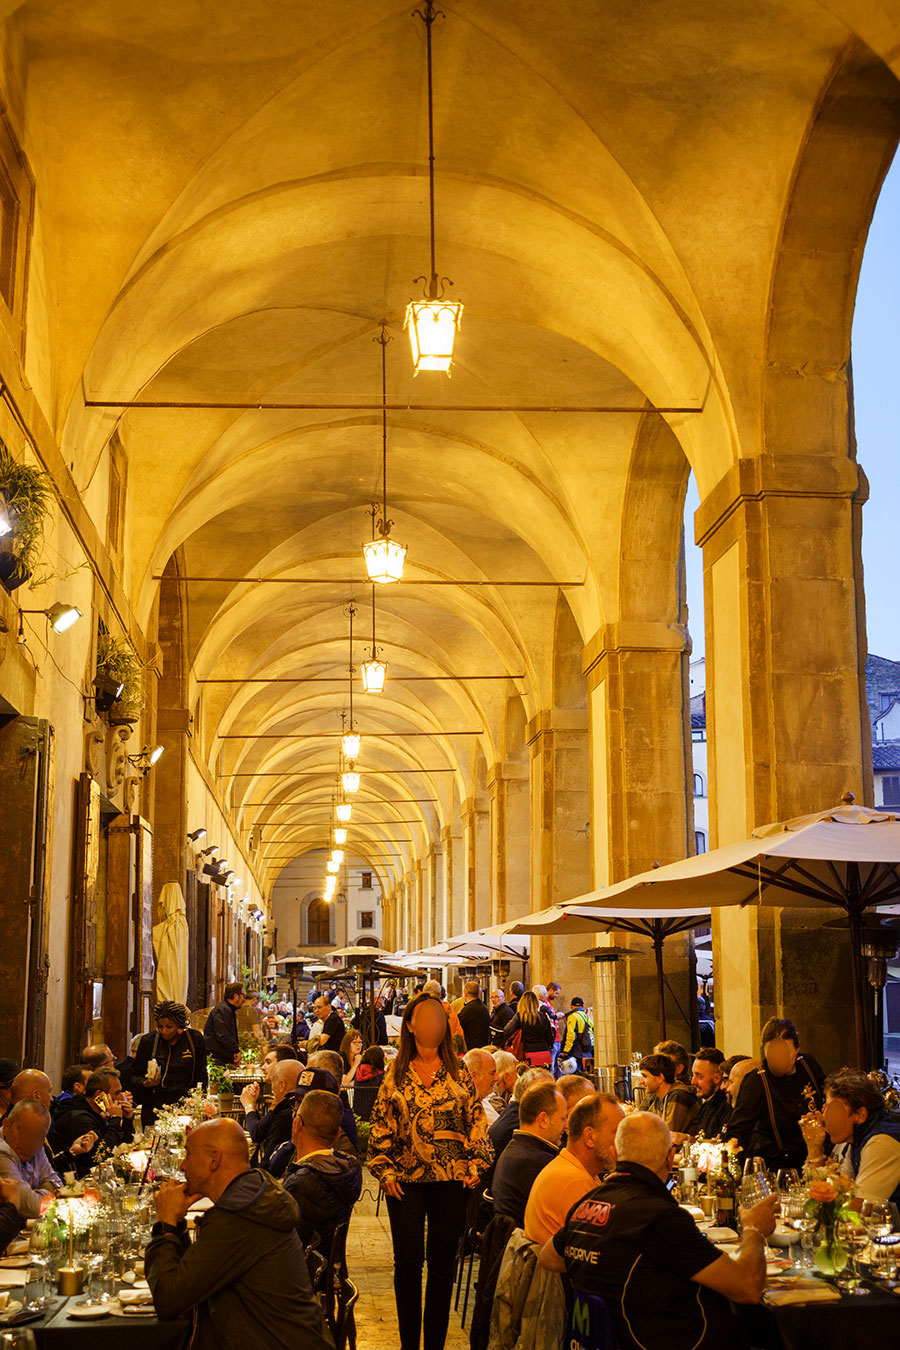 ロッジャ宮殿の回廊には、所狭しと飲食店のテーブルが並ぶ。